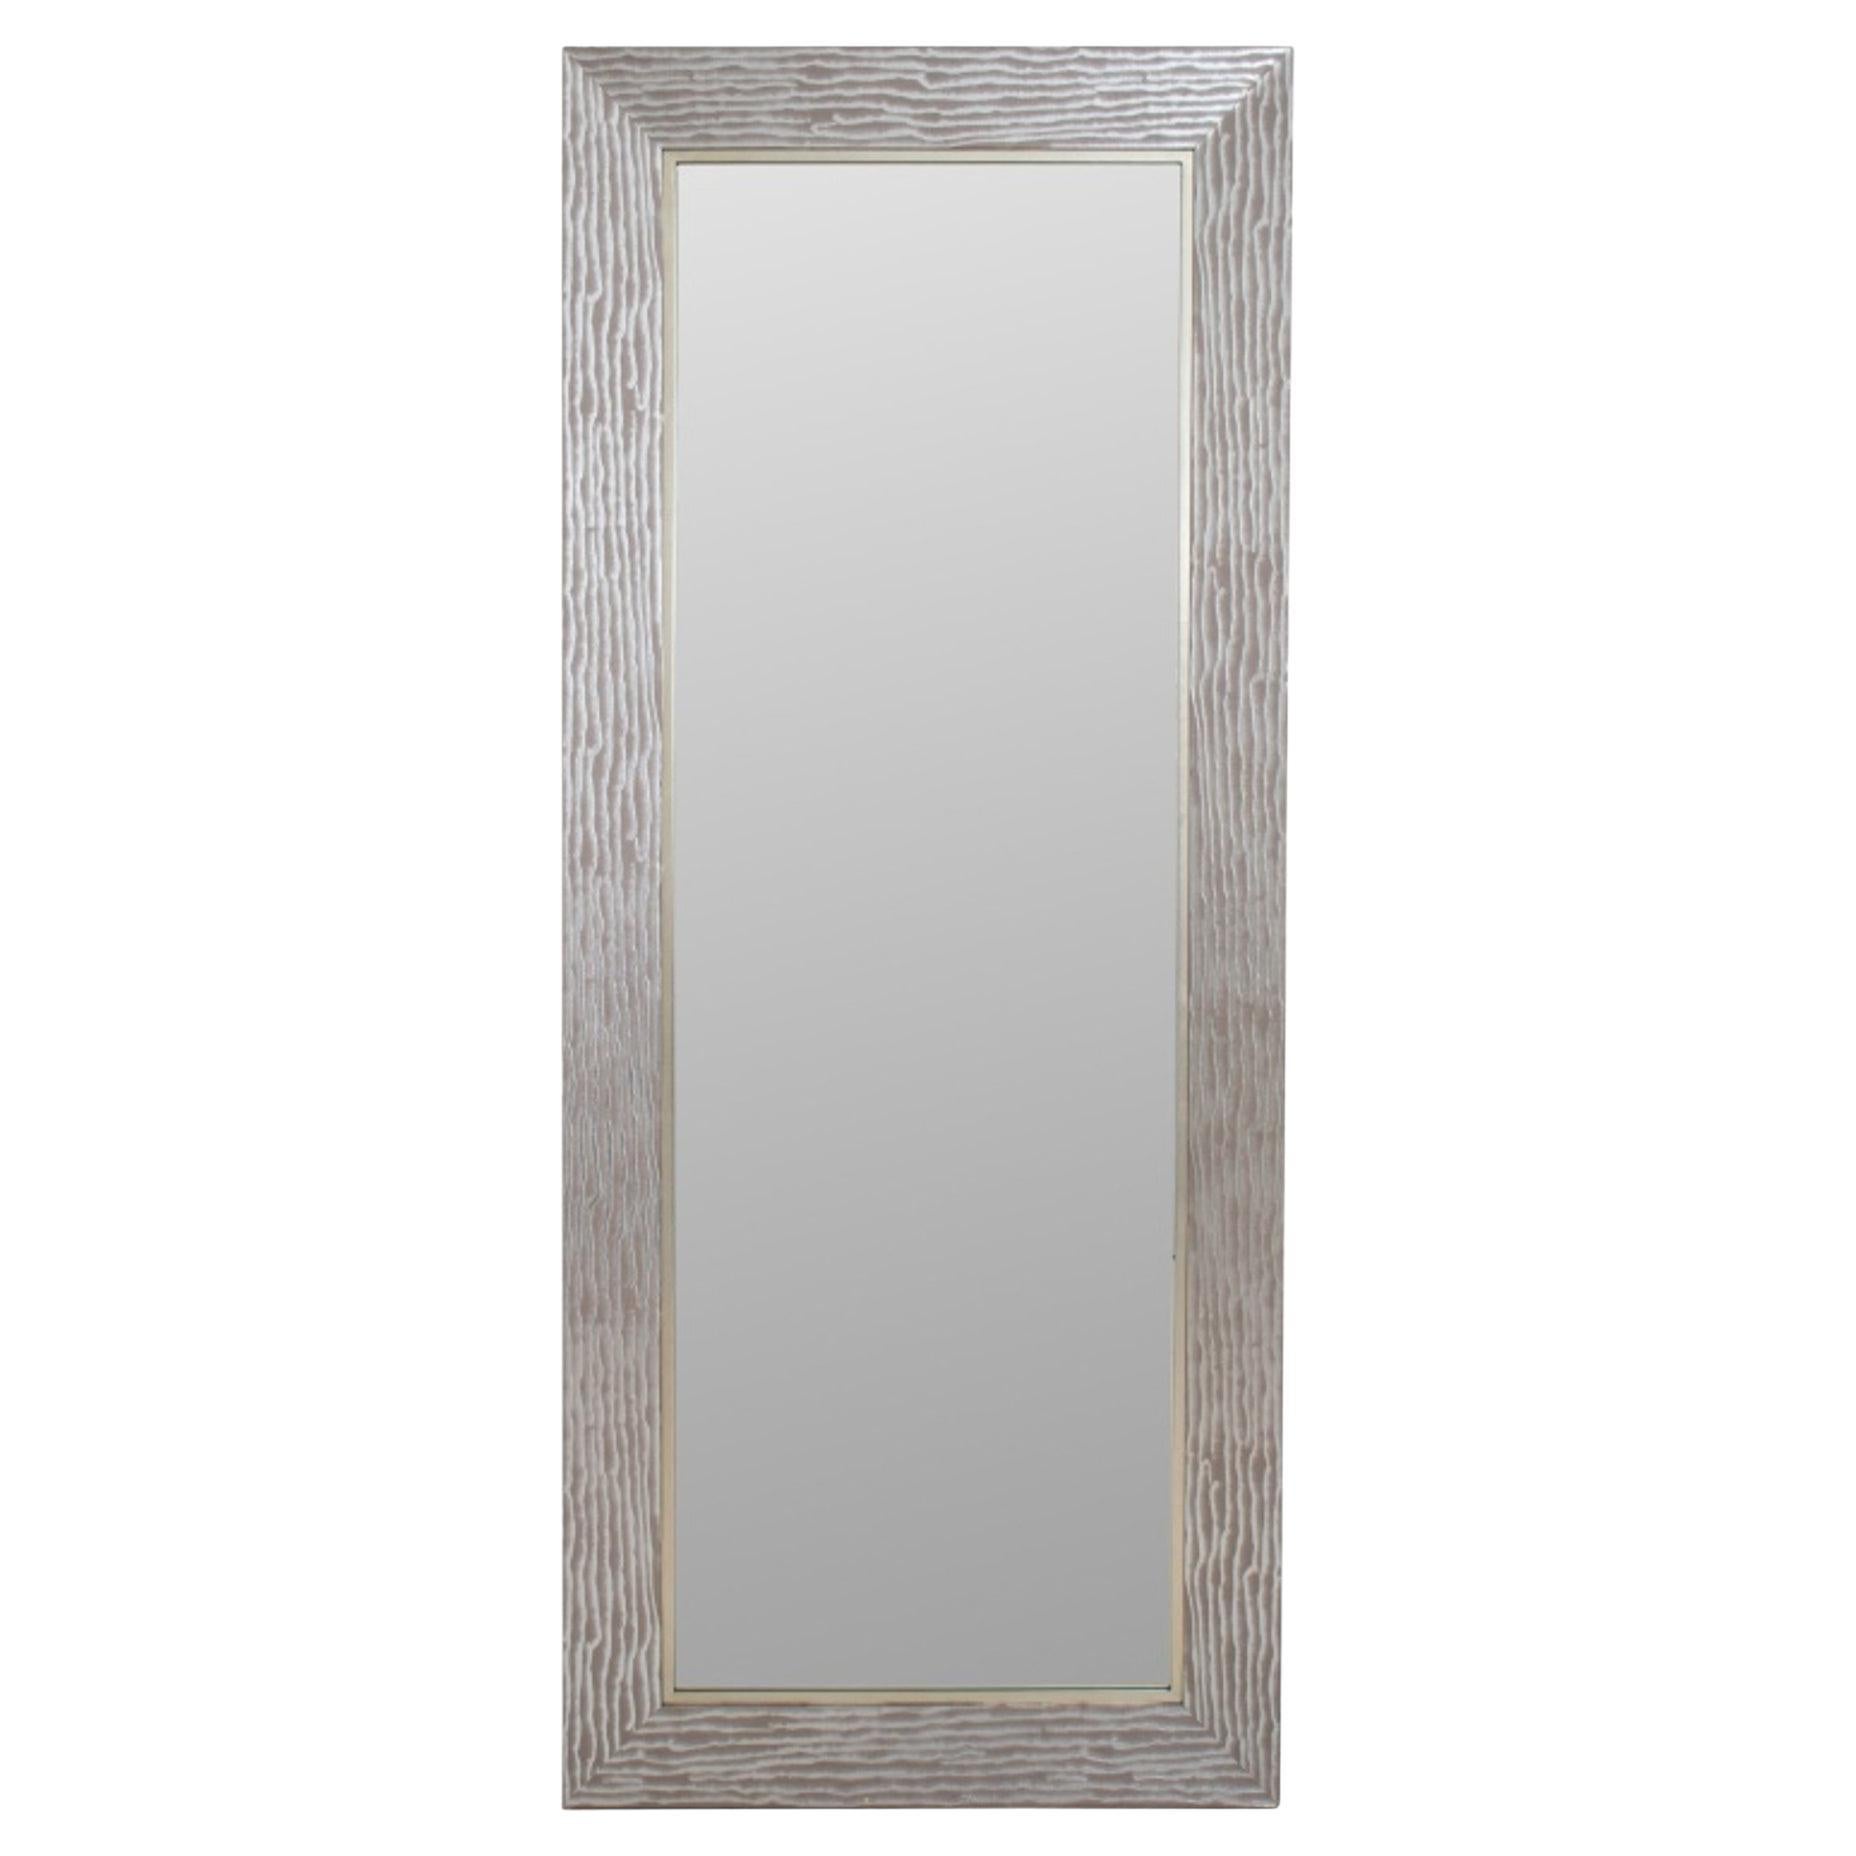 Grand miroir en bois argenté allongé Uttermost